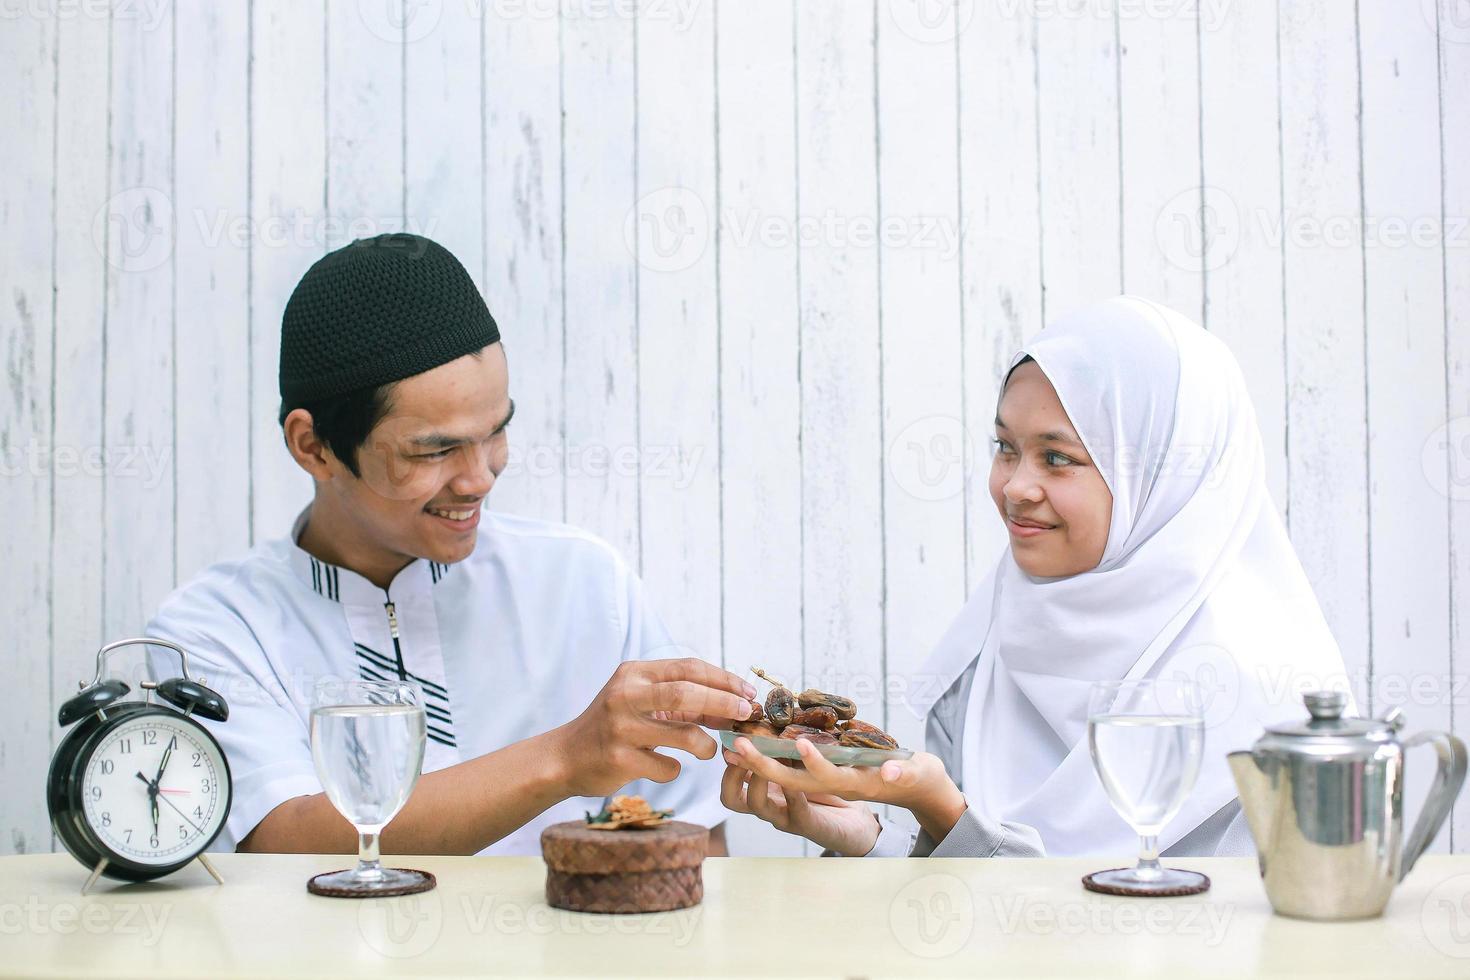 jeune couple musulman à l'heure de l'iftar. femme musulmane donnant des dates à un homme musulman. ramadan traditionnel, repas iftar. concept de mois de jeûne du ramadan kareem photo